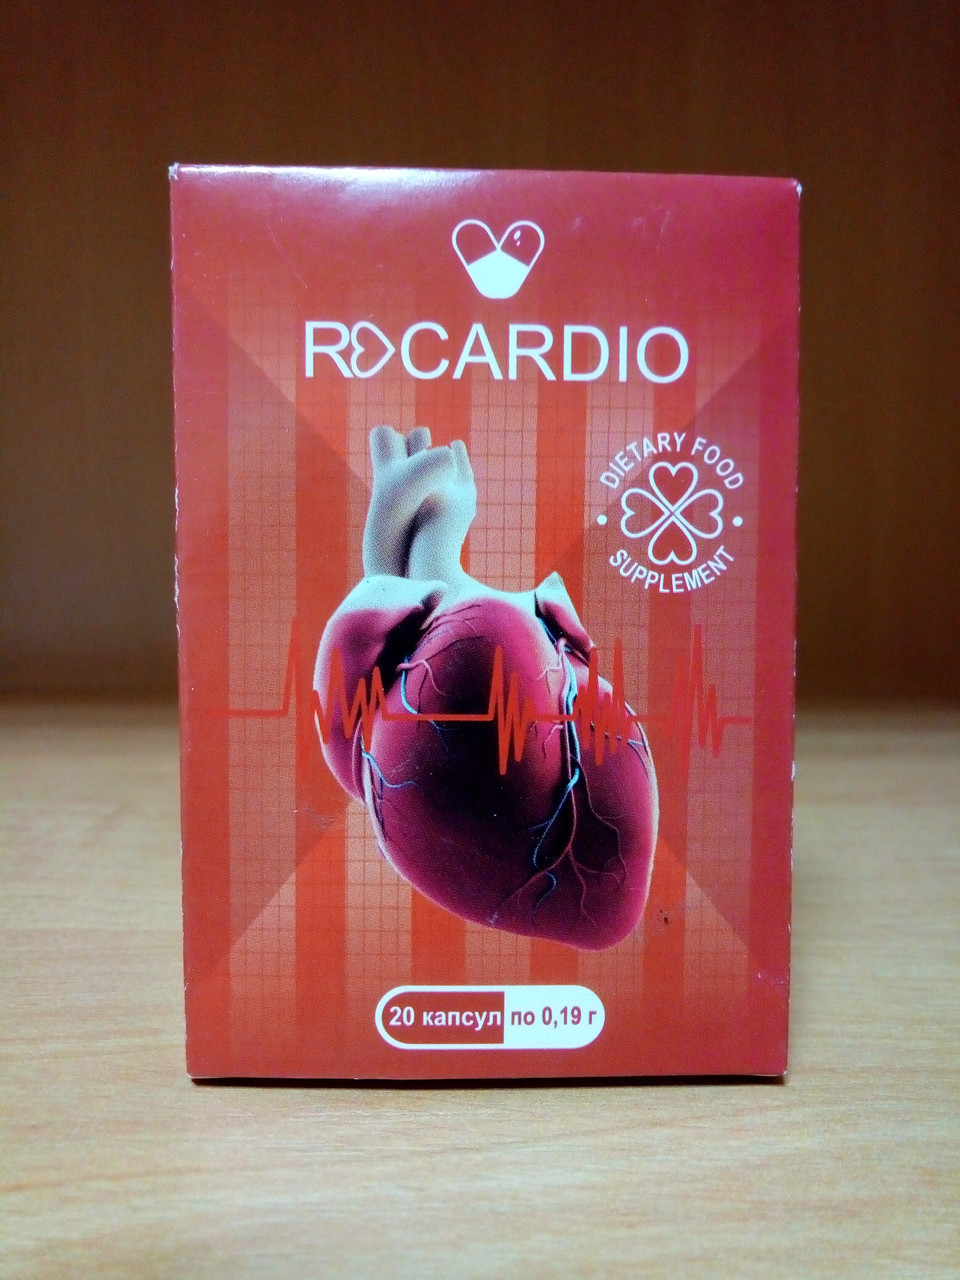 Recardio - Капсули для нормалізації тиску (РеКардио)